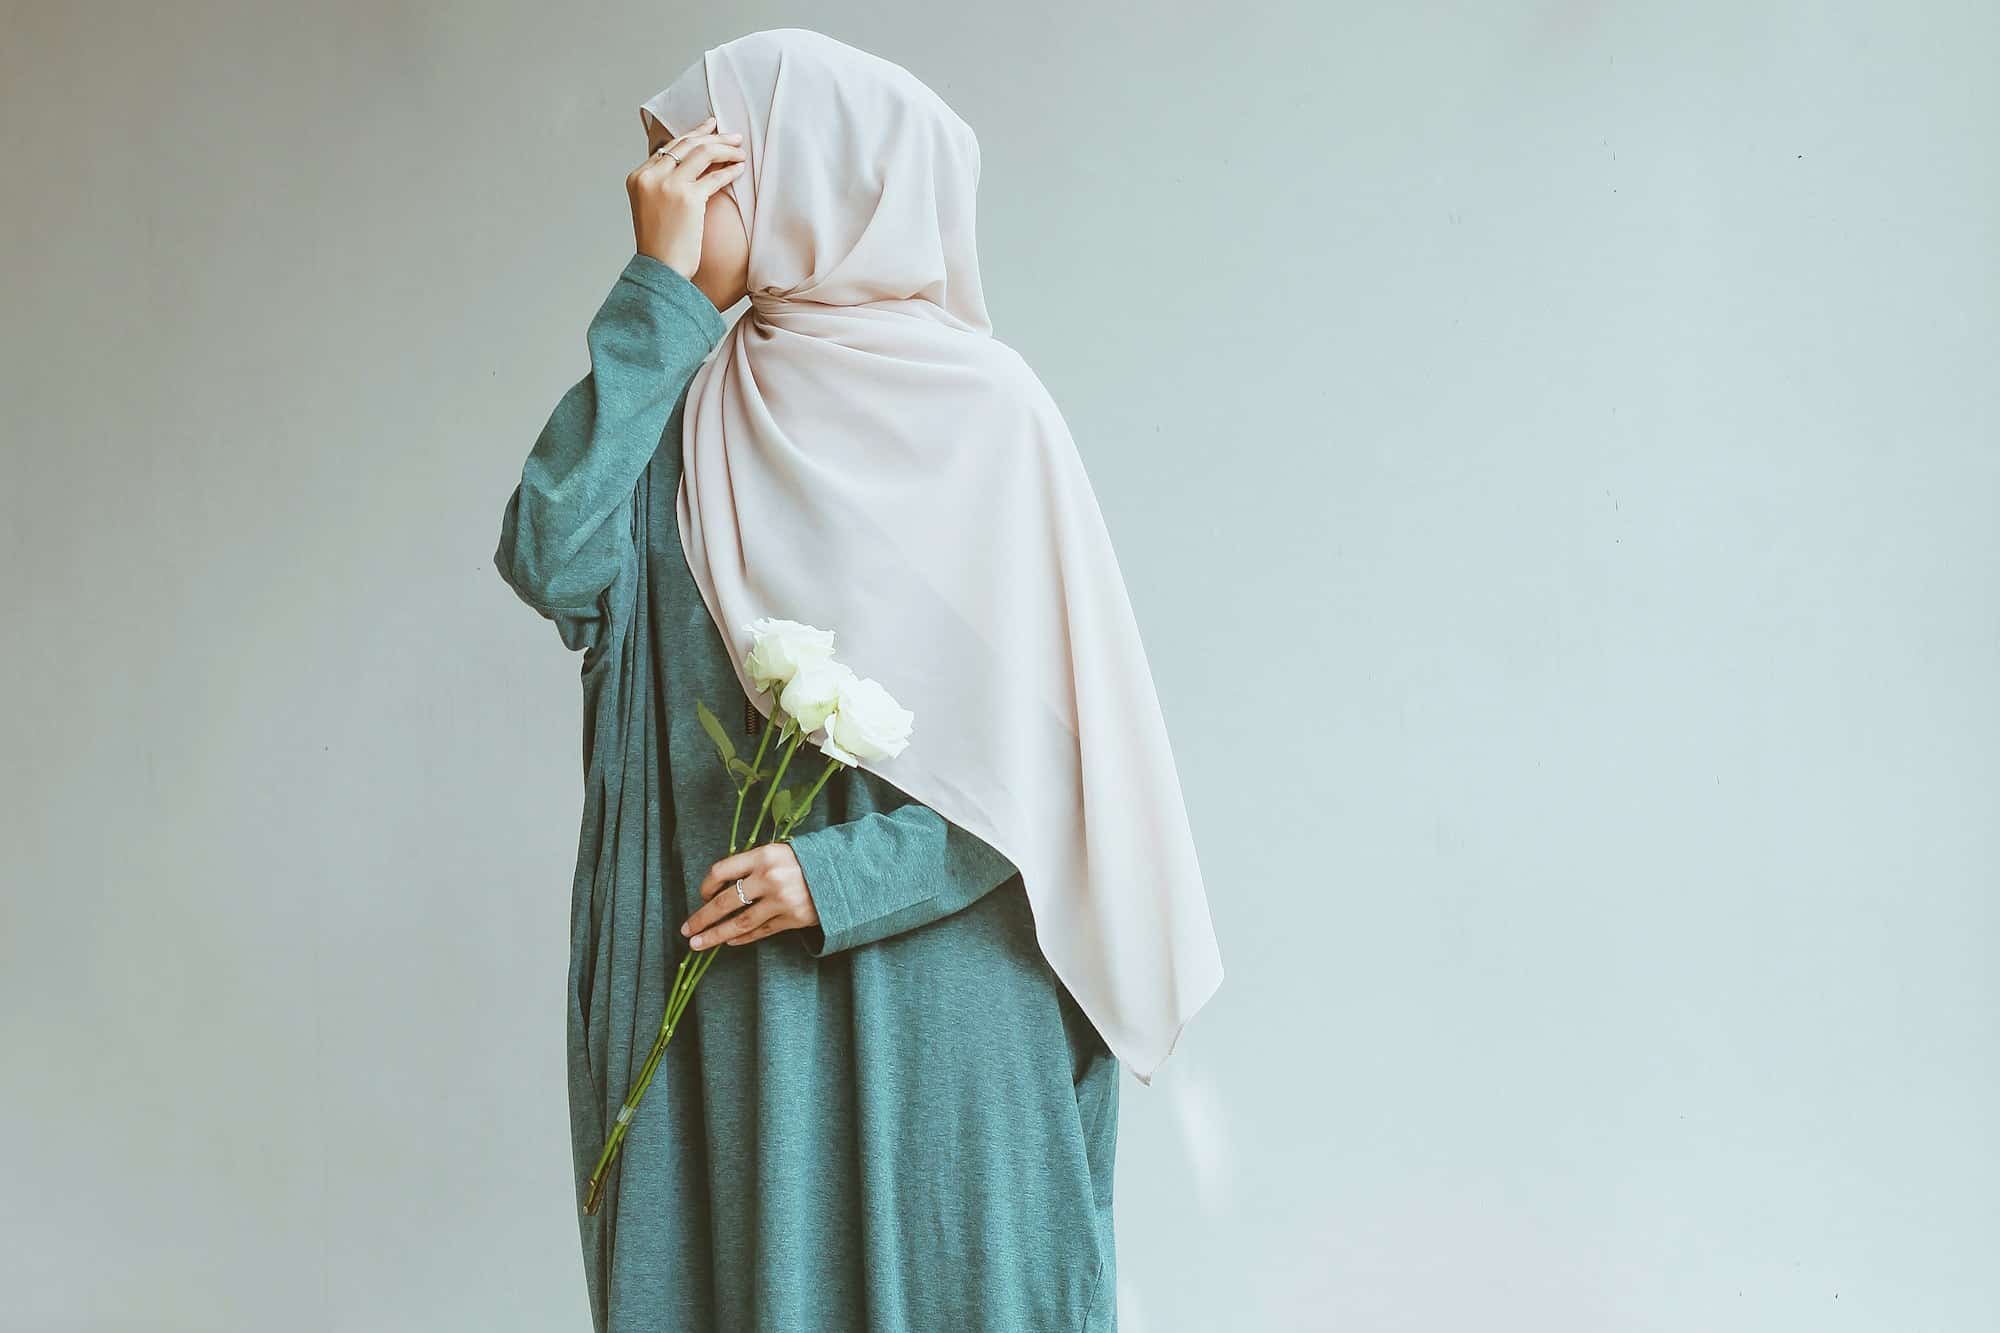 Élégance Modeste: Découvrez les Tendances en Vêtements Islamiques